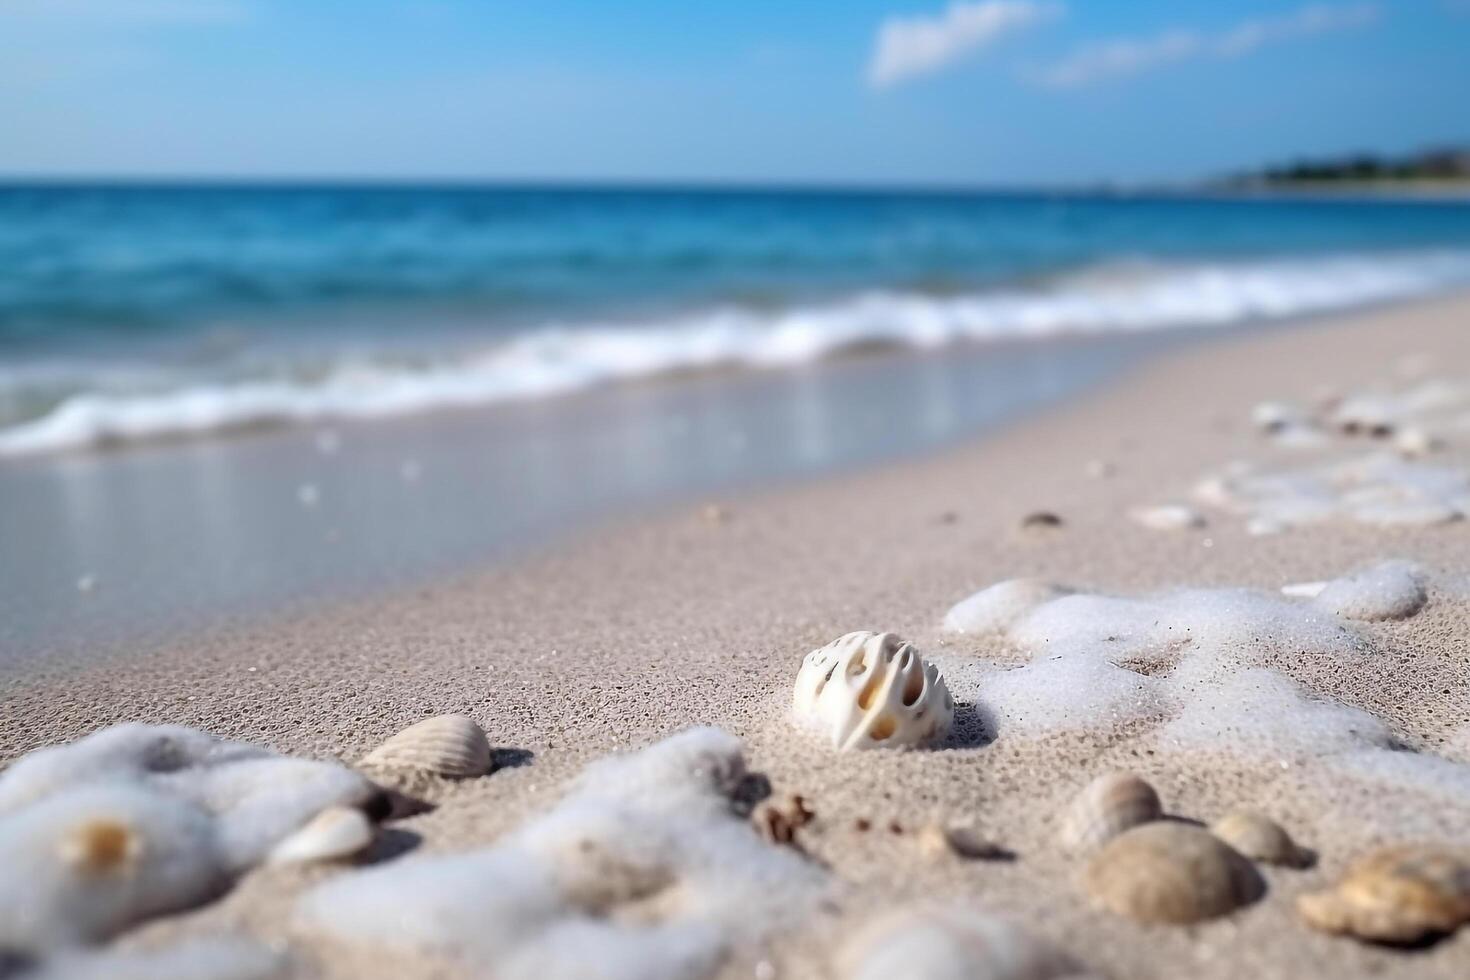 fechar-se branco areia bem de praia com mar fundo.. foto